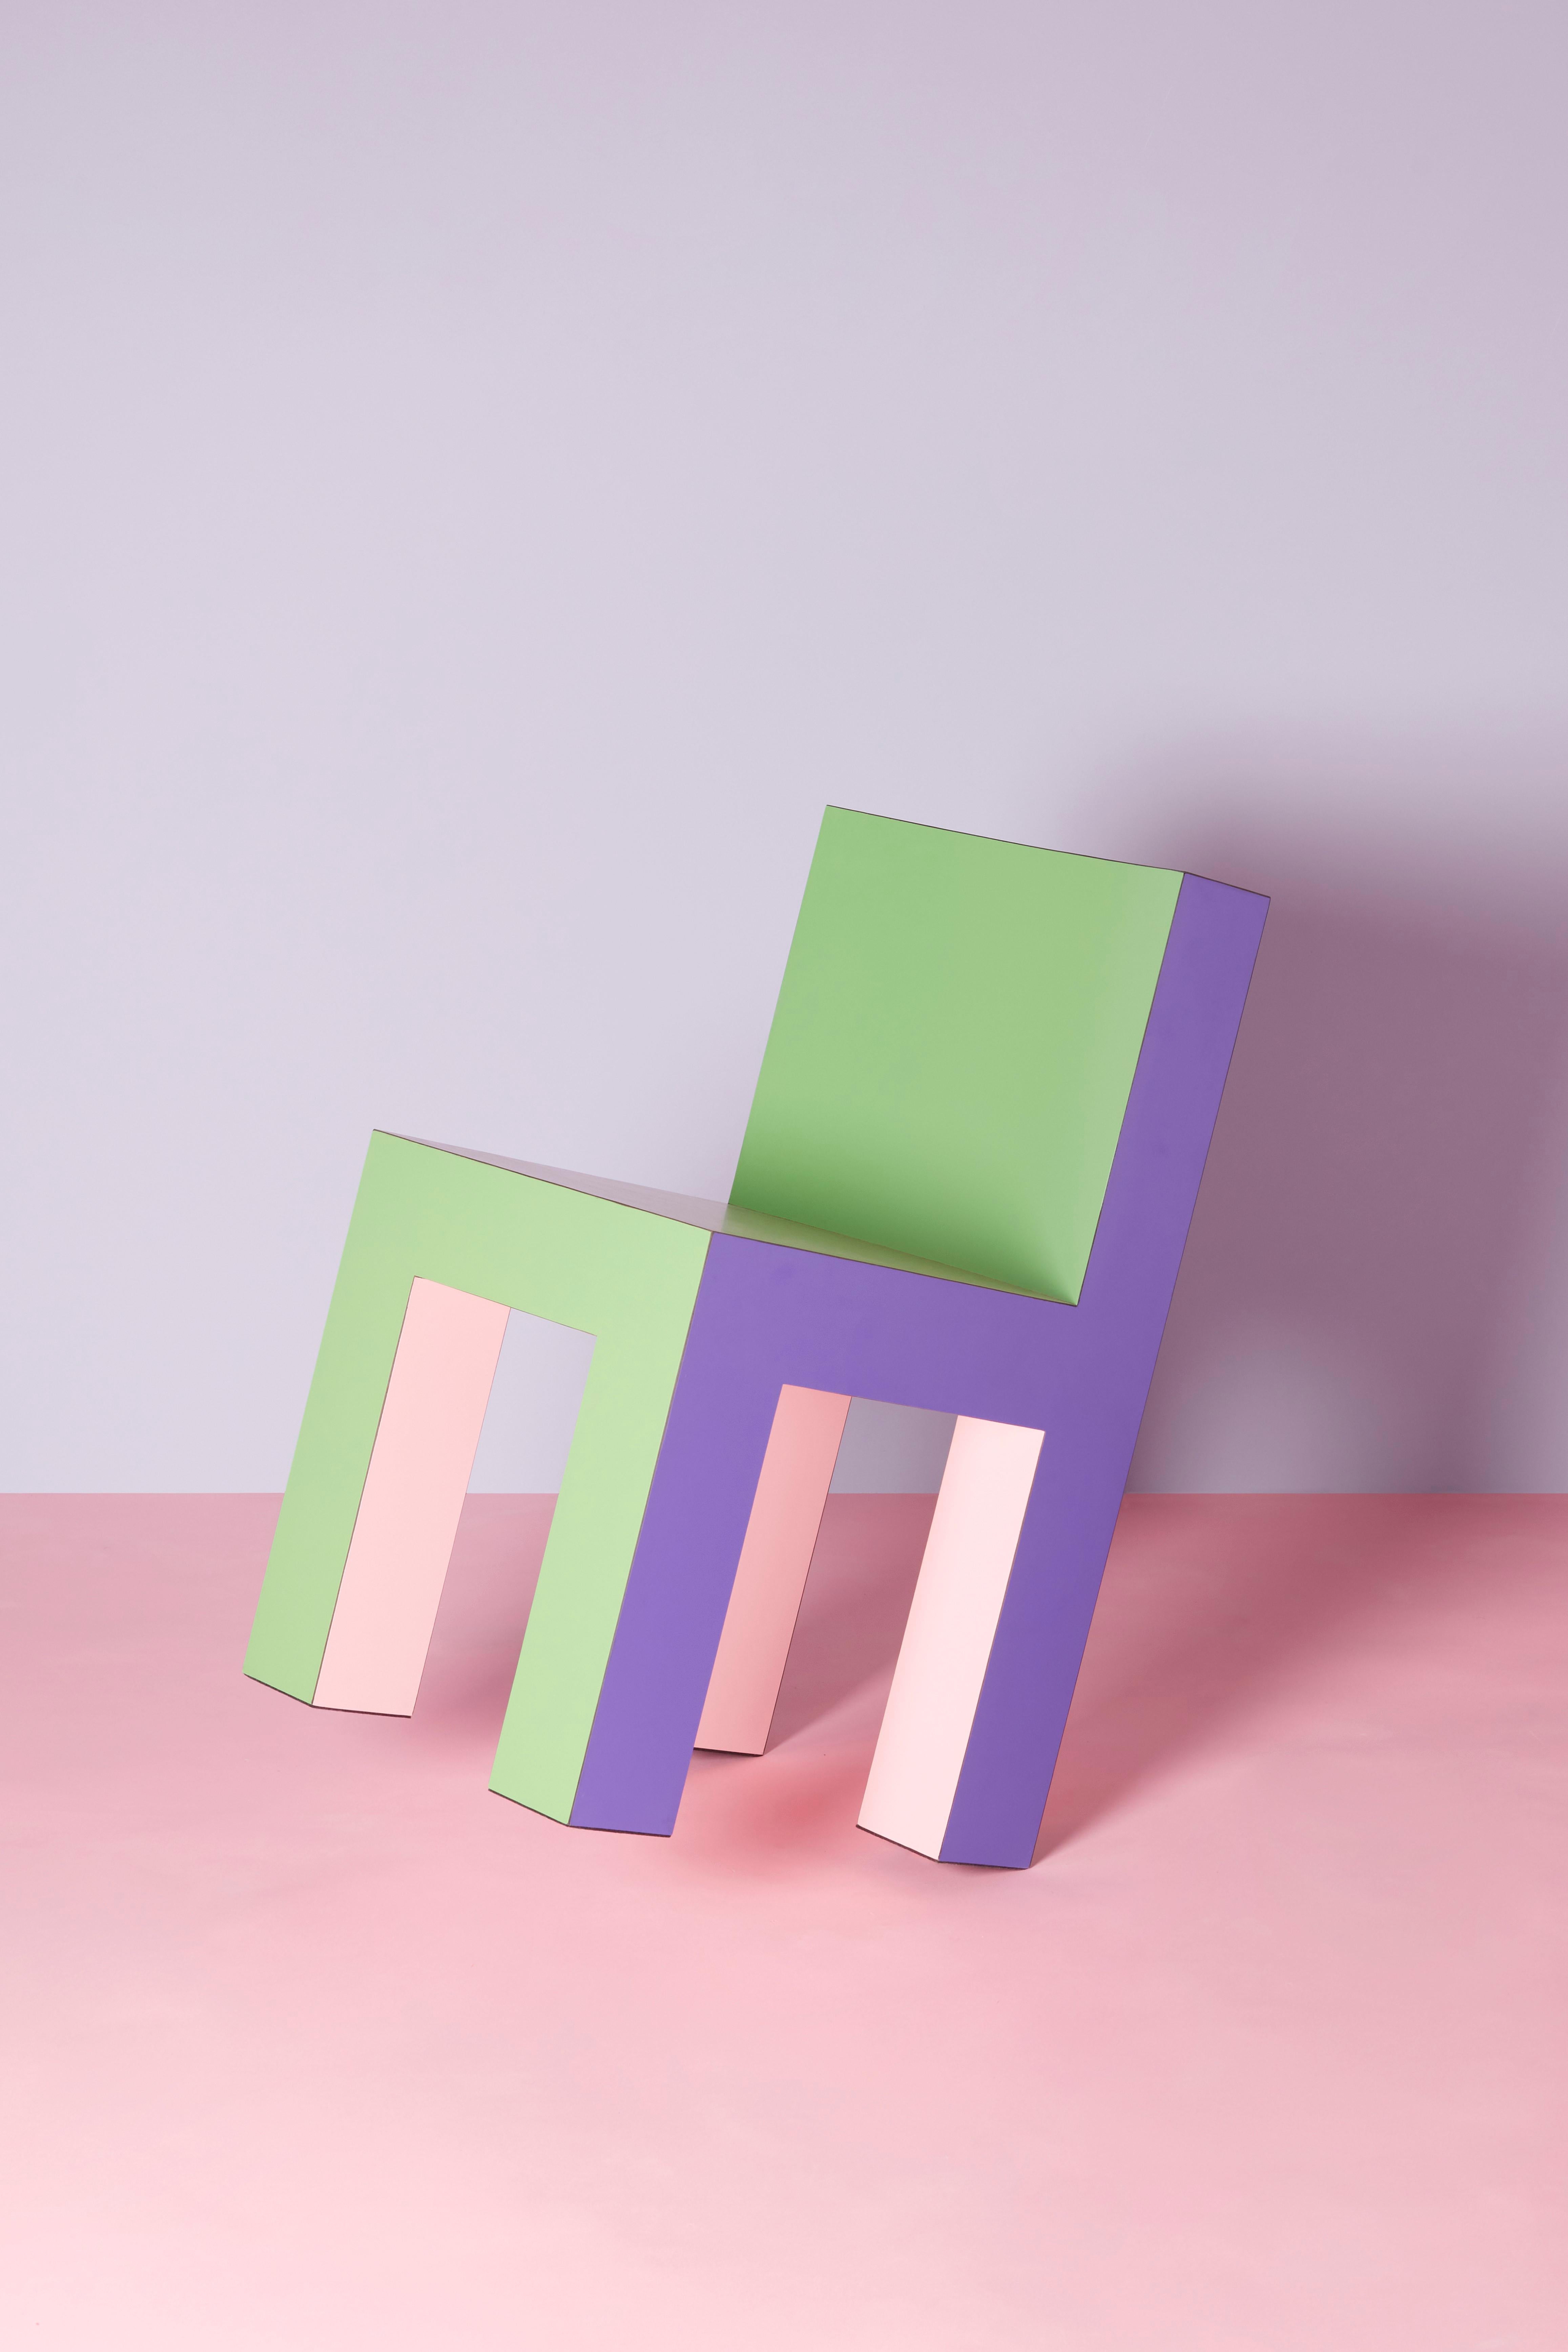 La chaise Tagadà est l'aboutissement de l'ADN du Studio : une matrice de rigueur et de jeu, de minimalisme et d'ironie. Formes, proportions et couleurs se rejoignent dans une pièce de design emblématique.

Tagadà Collectional est une collection